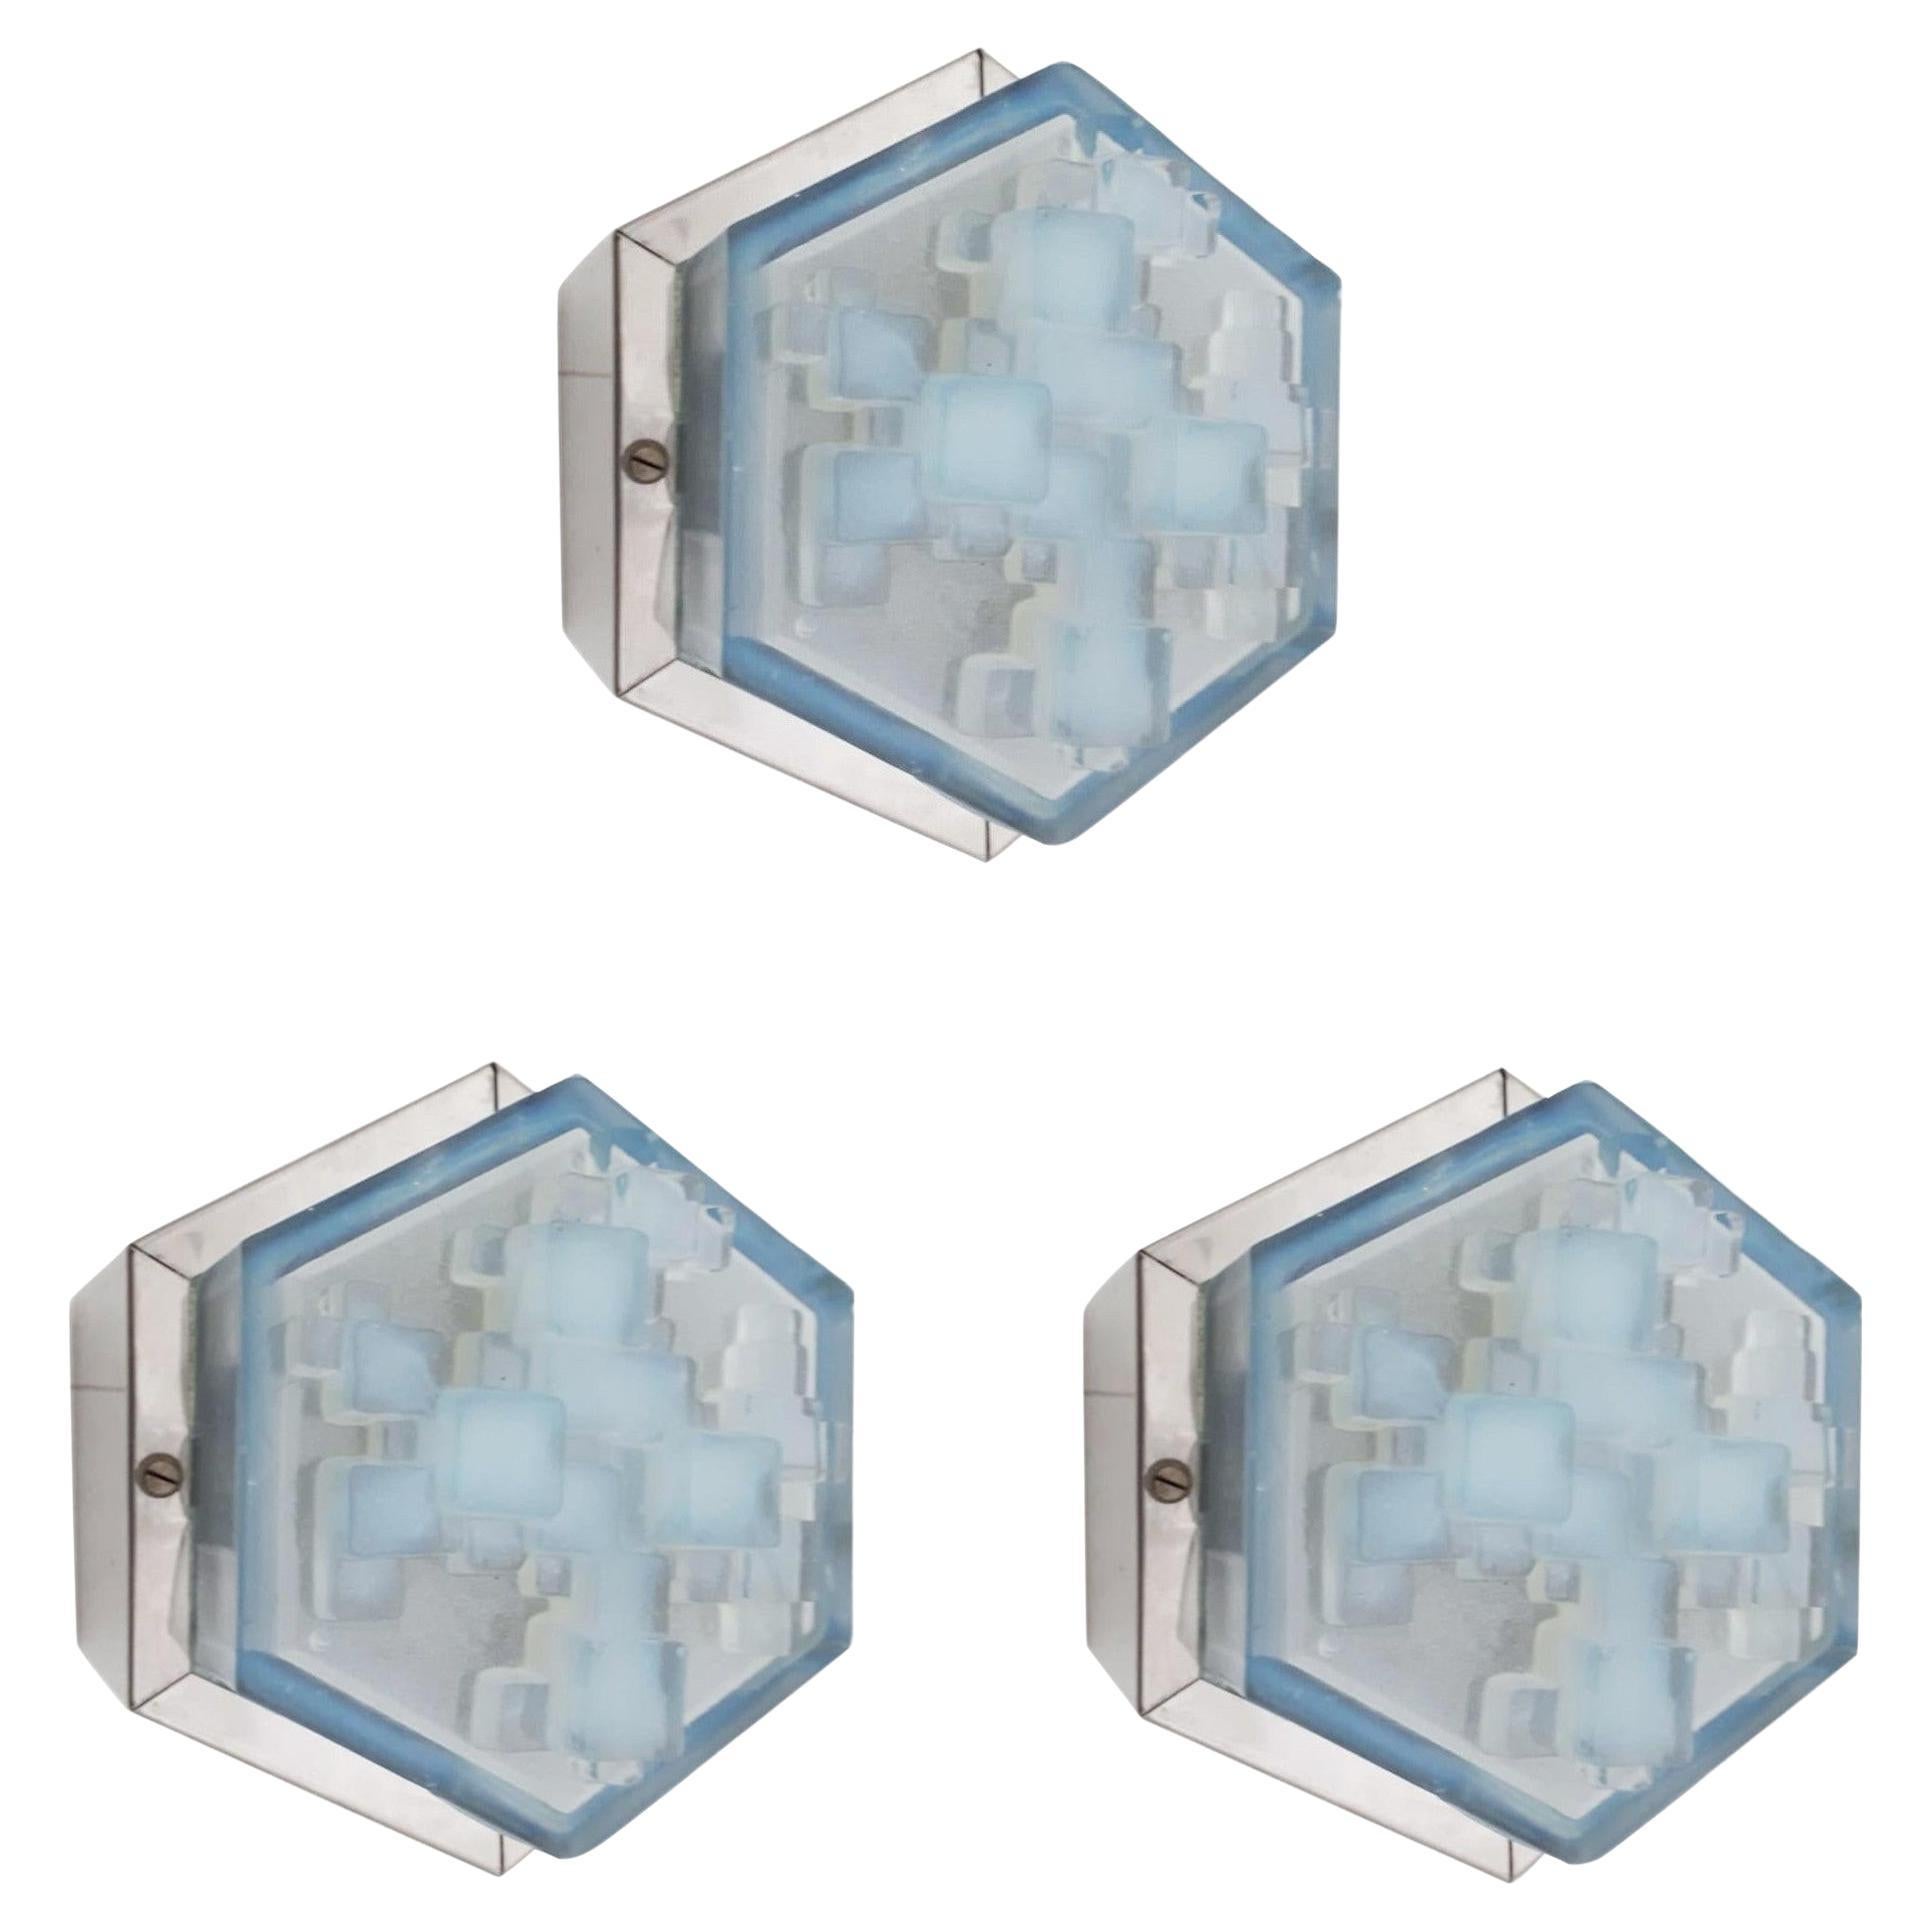 Sechseckige modulare Wandleuchter / Einbaubeleuchtung von Poliarte - 3 verfügbar